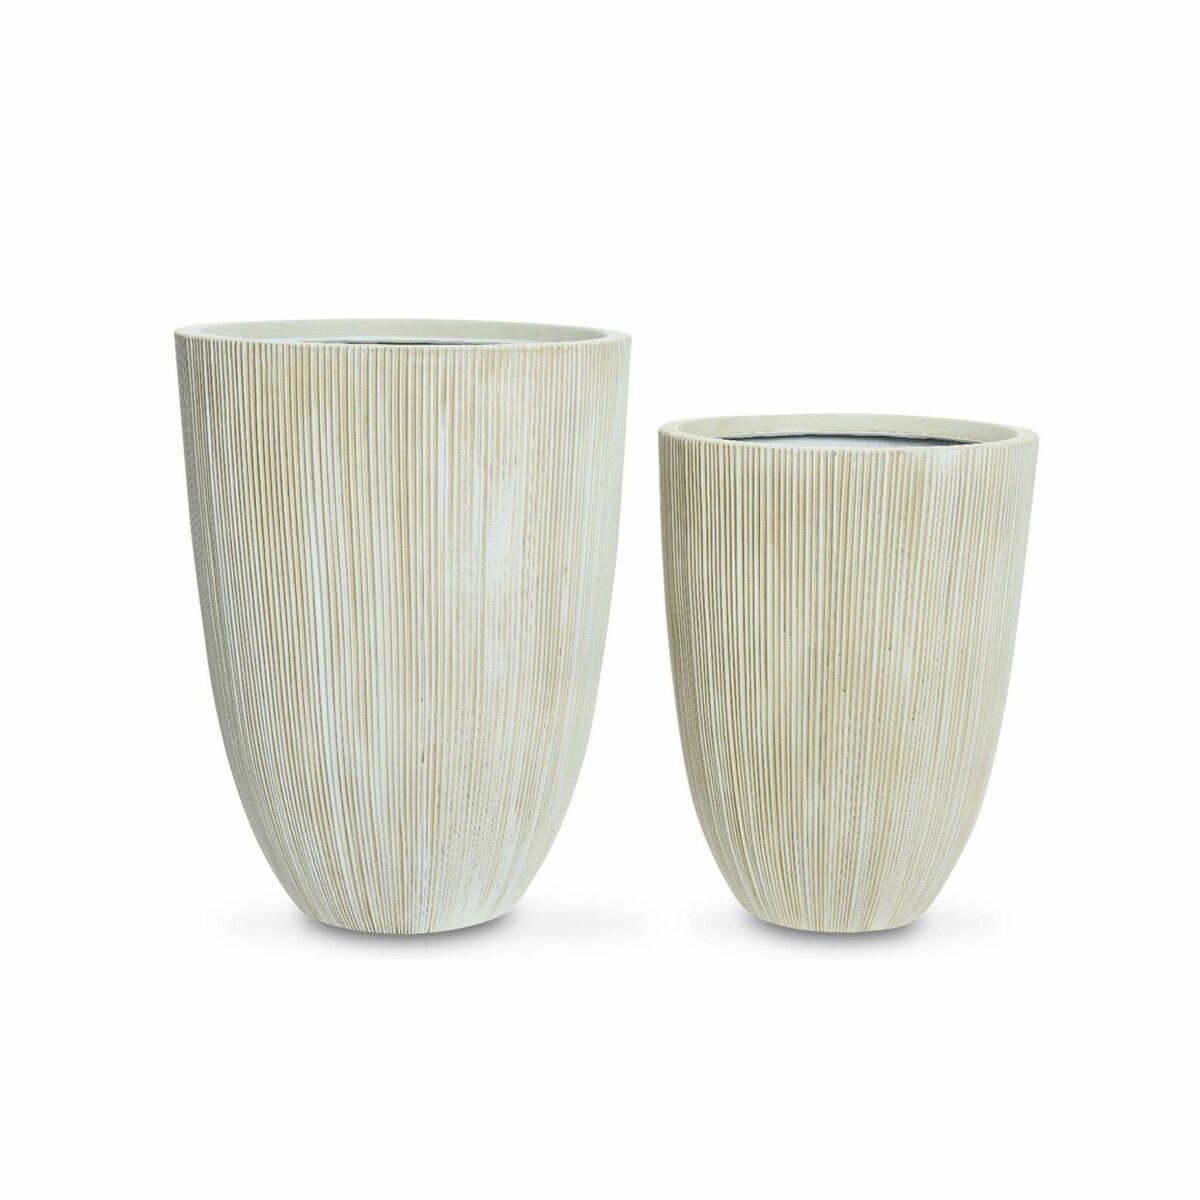  Set de 2 bacs à fleurs – TIARE – vases en plastique, 2 tailles, cylindriques, gris foncé, emboitables